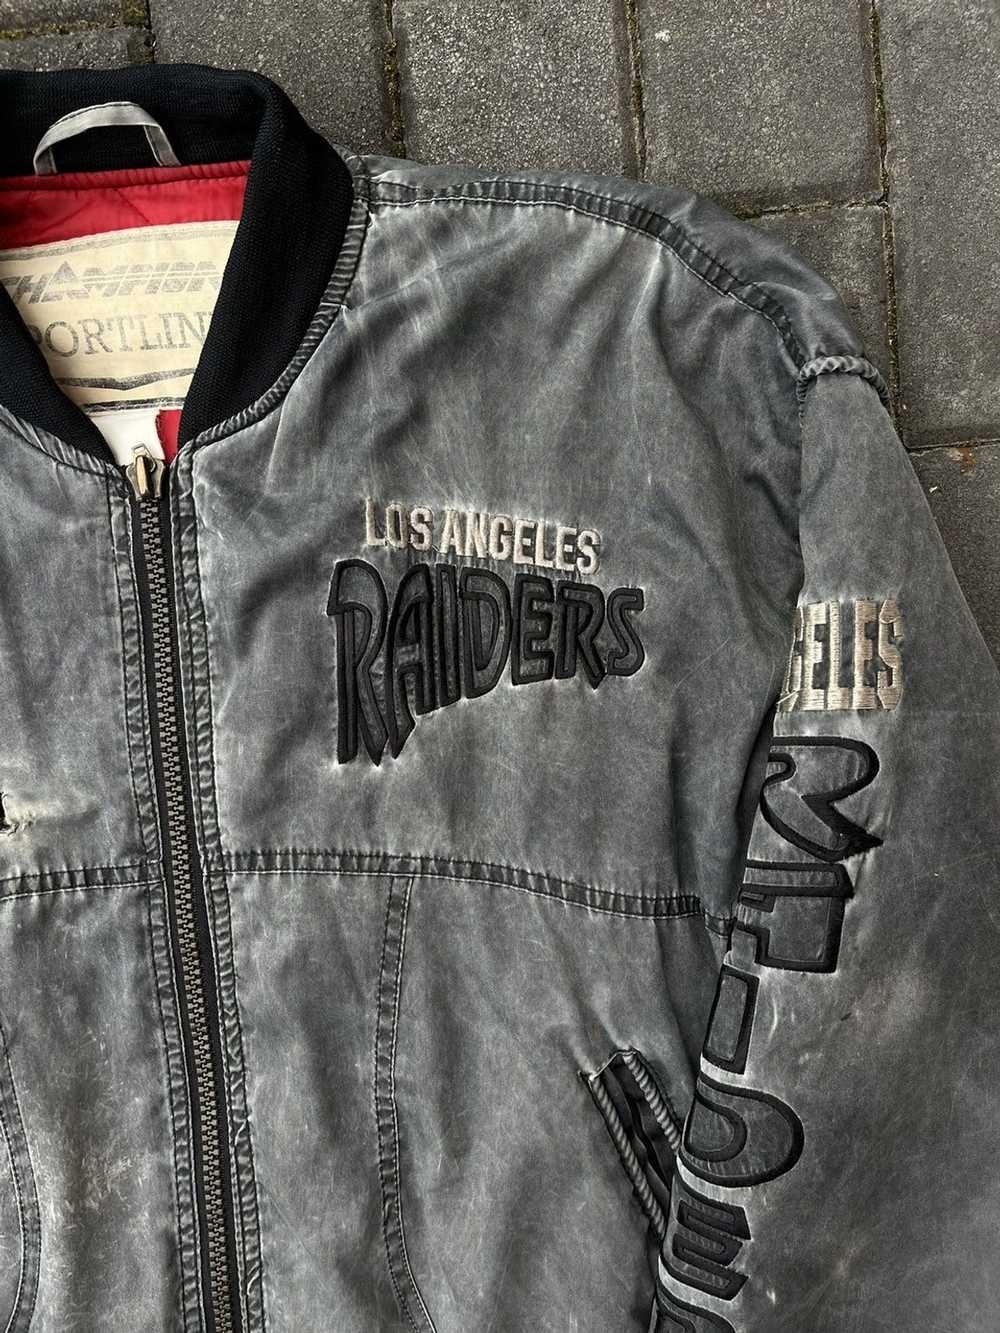 Vintage 90s Starter Raiders NFL Varsity Las Vegas Jacket 